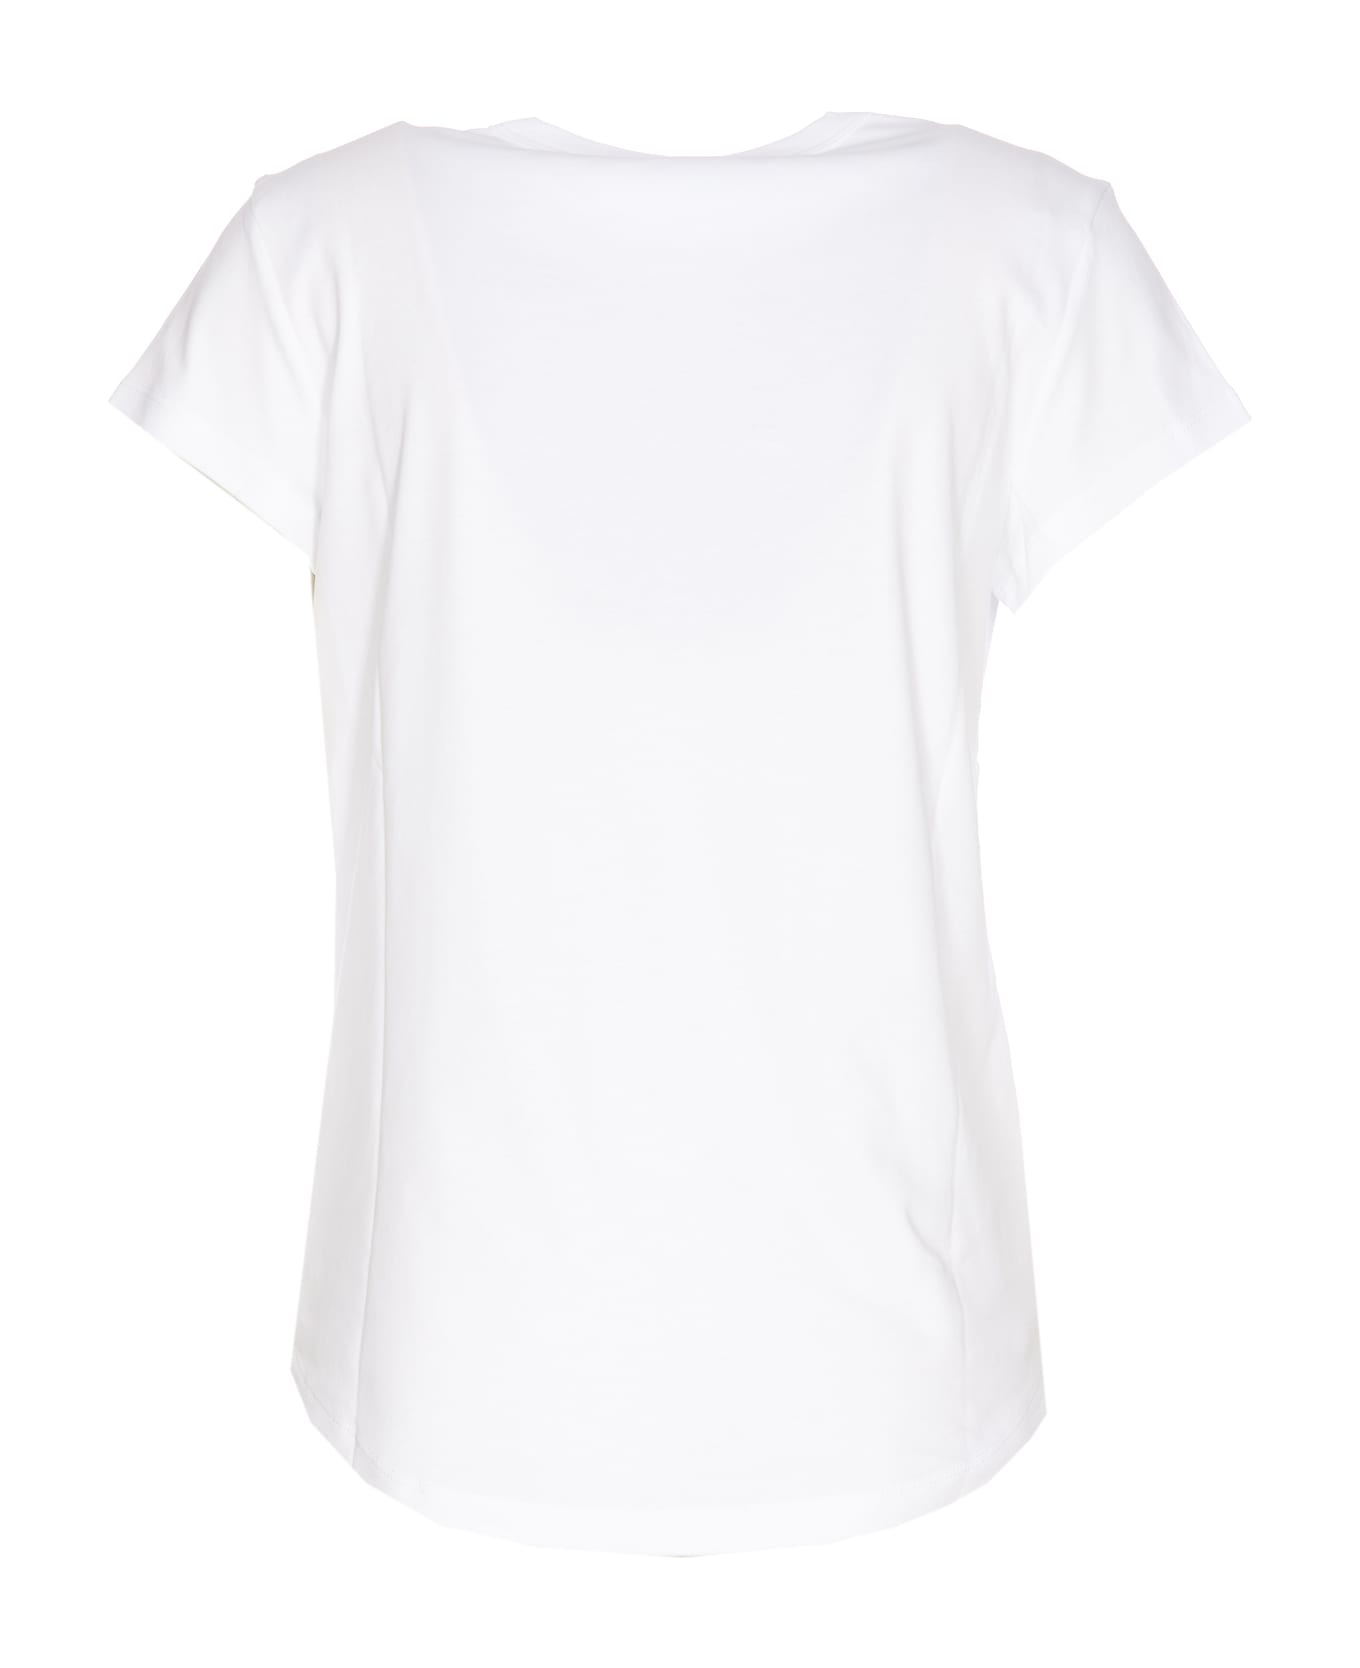 Zadig & Voltaire Woop Ico Blason T-shirt - White